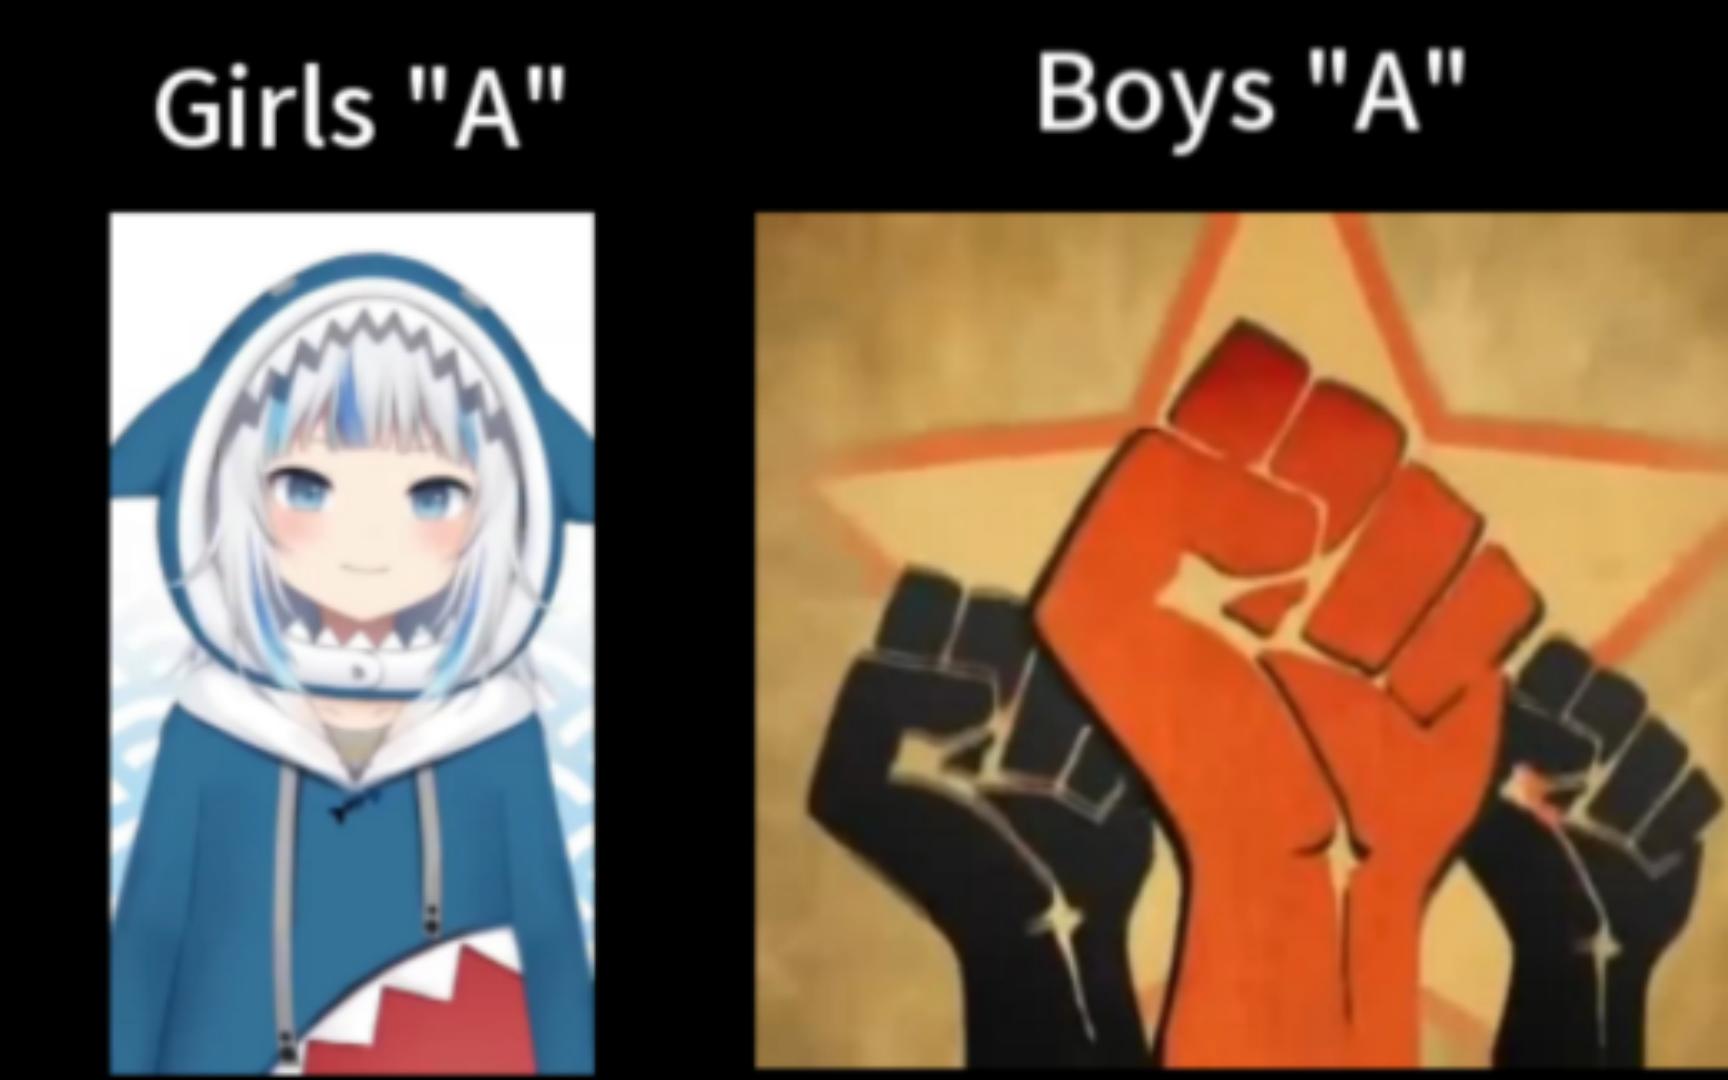 女生的“A”与男生的“A”的区别